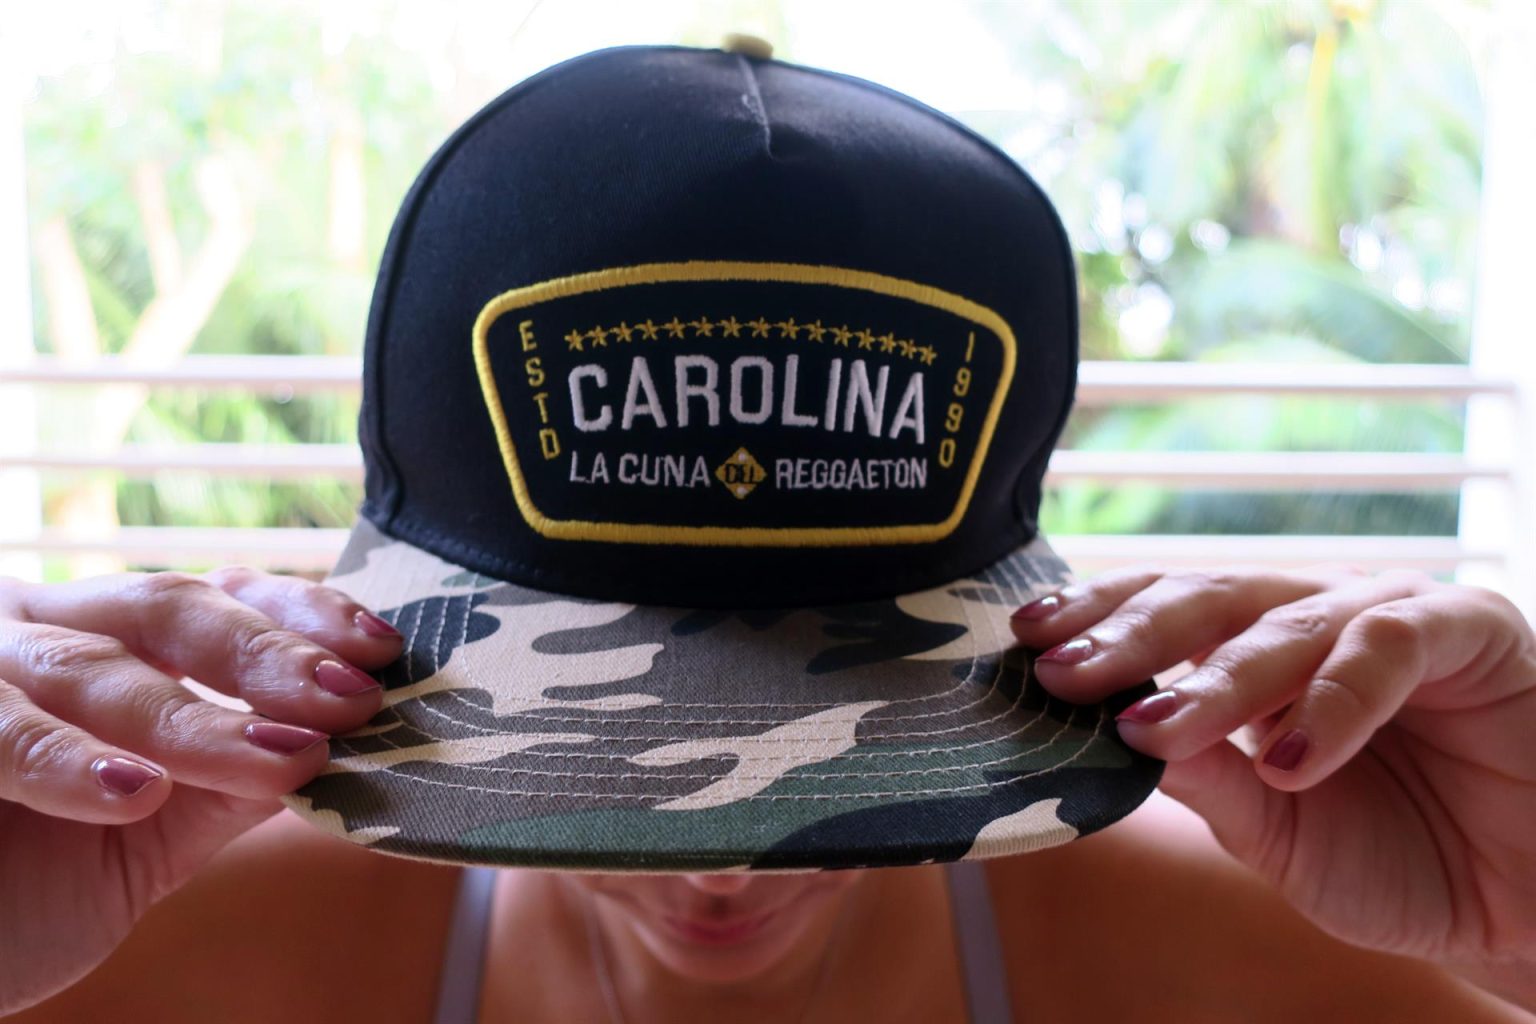 Una mujer muestra hoy una gorra con el nombre de "Carolina", municipio considerado como la cuna del reguetón, en San Juan (Puerto Rico). EFE/Jorge Muñiz